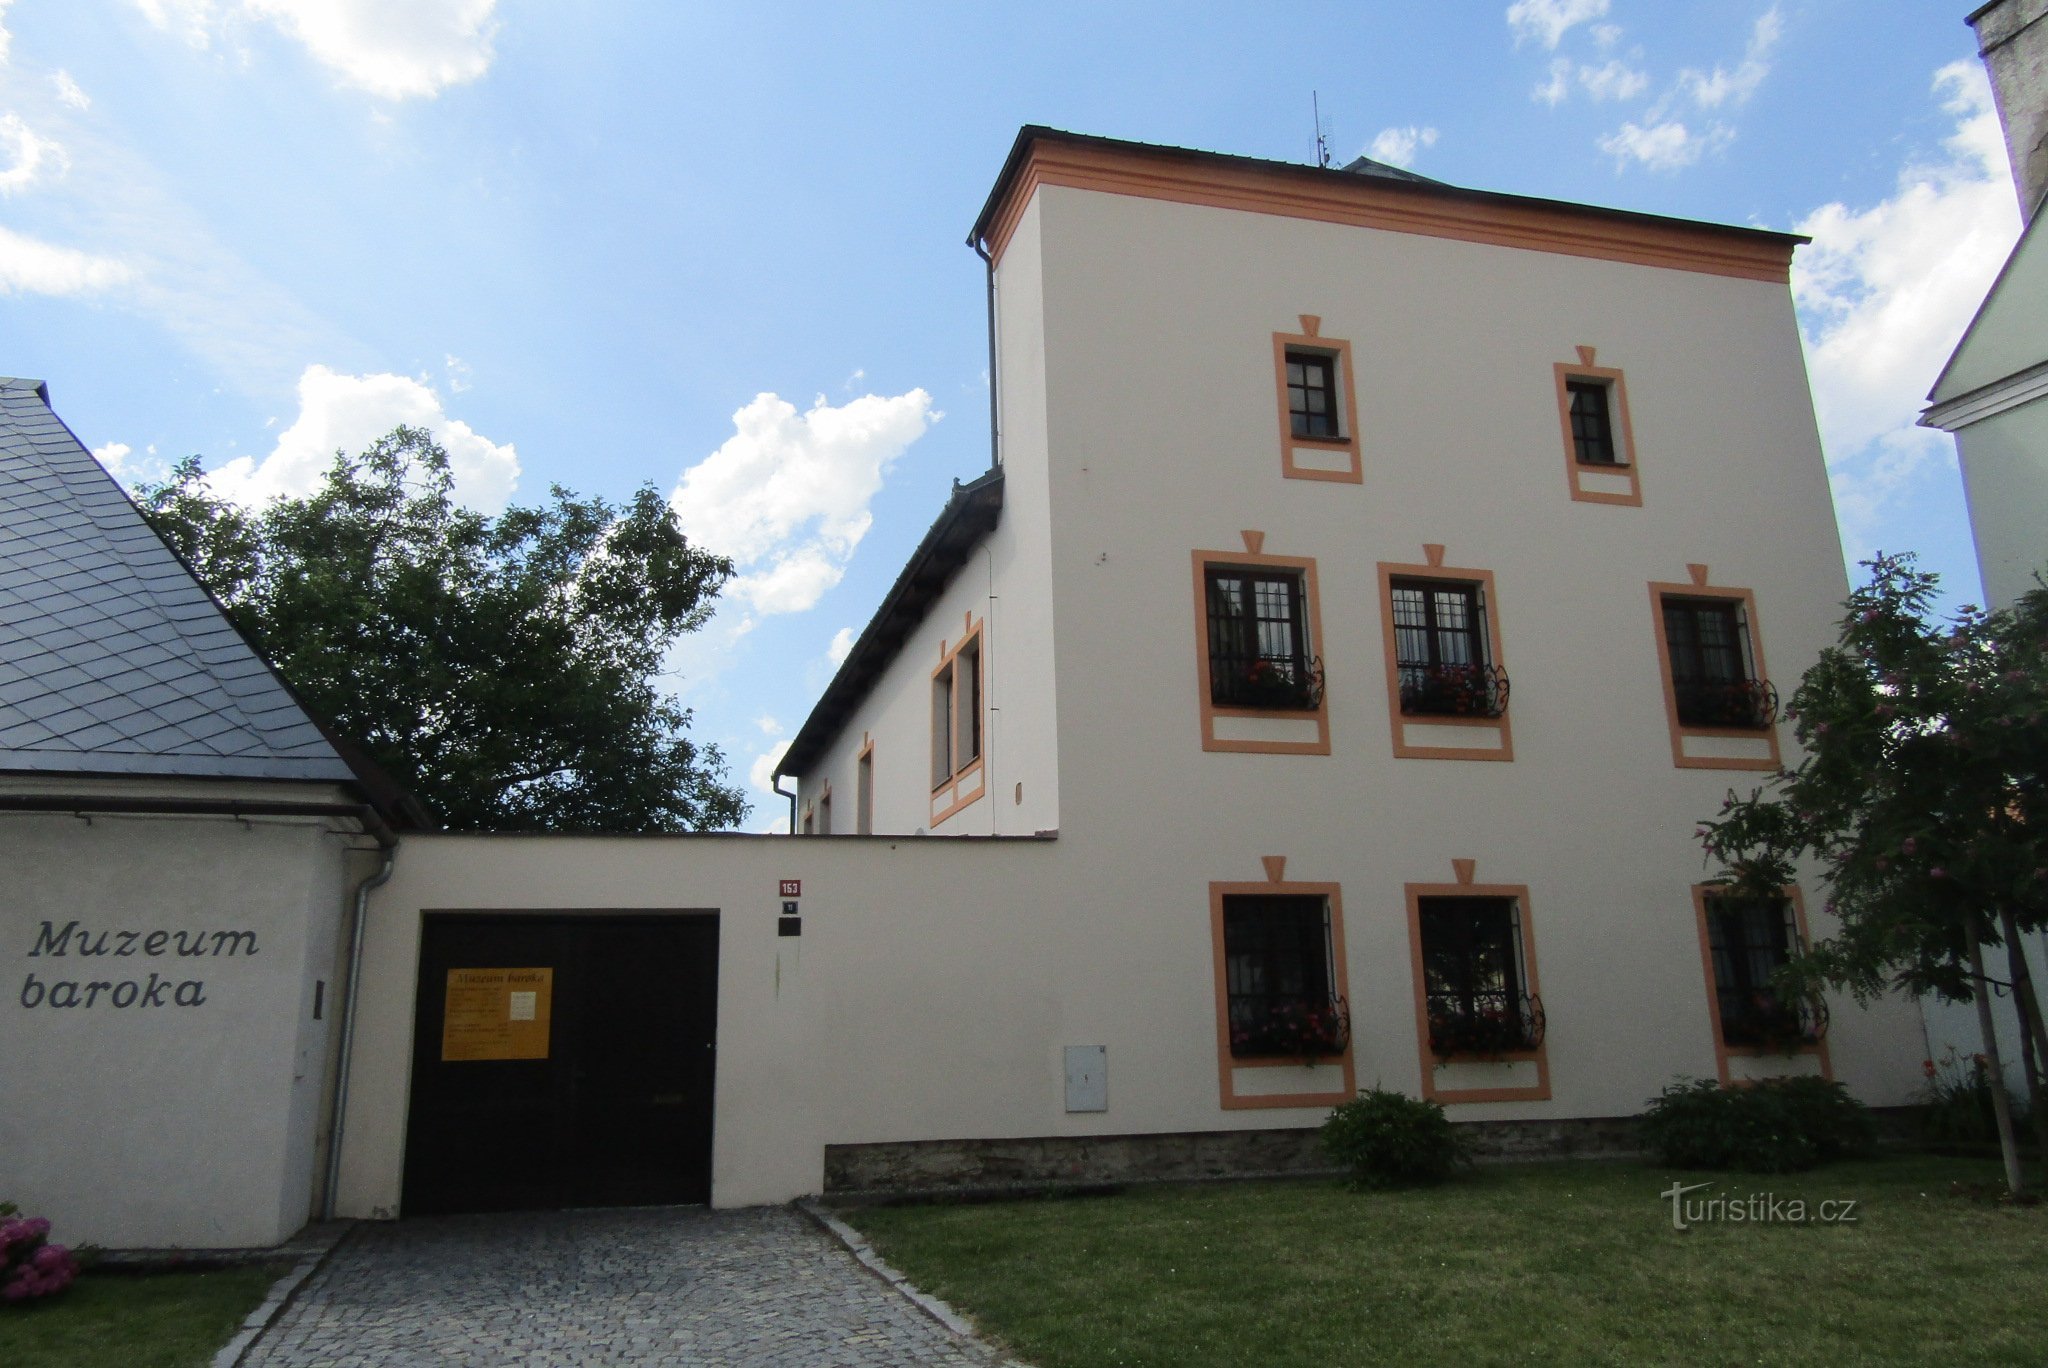 Zum Museum in Uničov